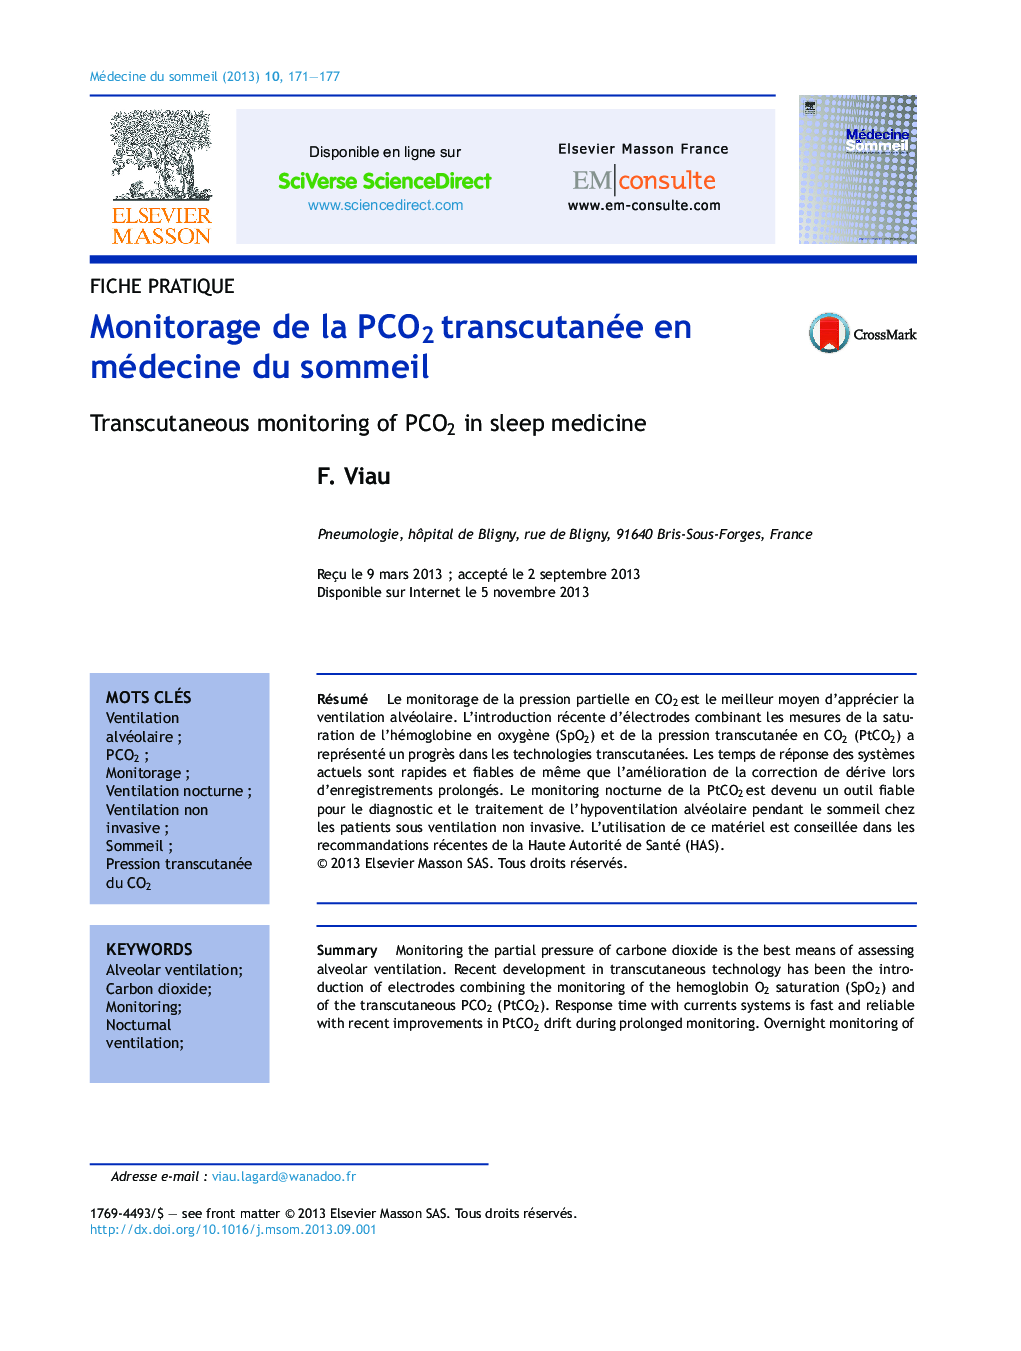 Monitorage de la PCO2Â transcutanée en médecine du sommeil